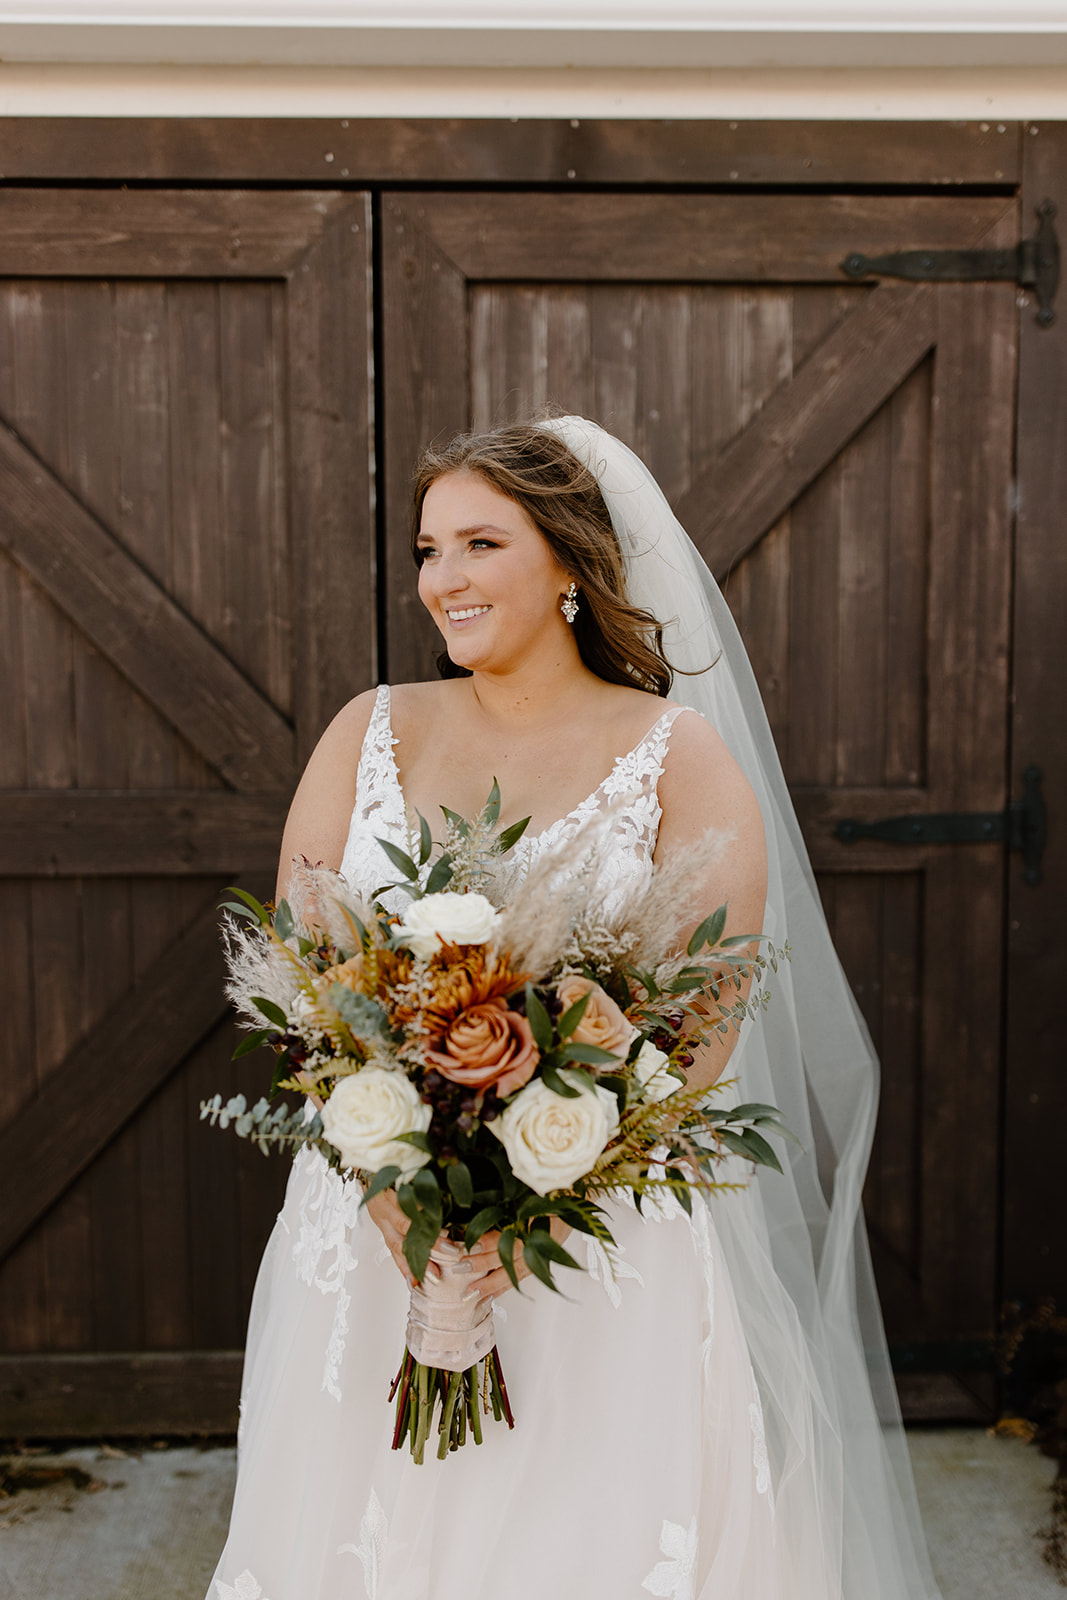 Bride smiles in front of a barn door